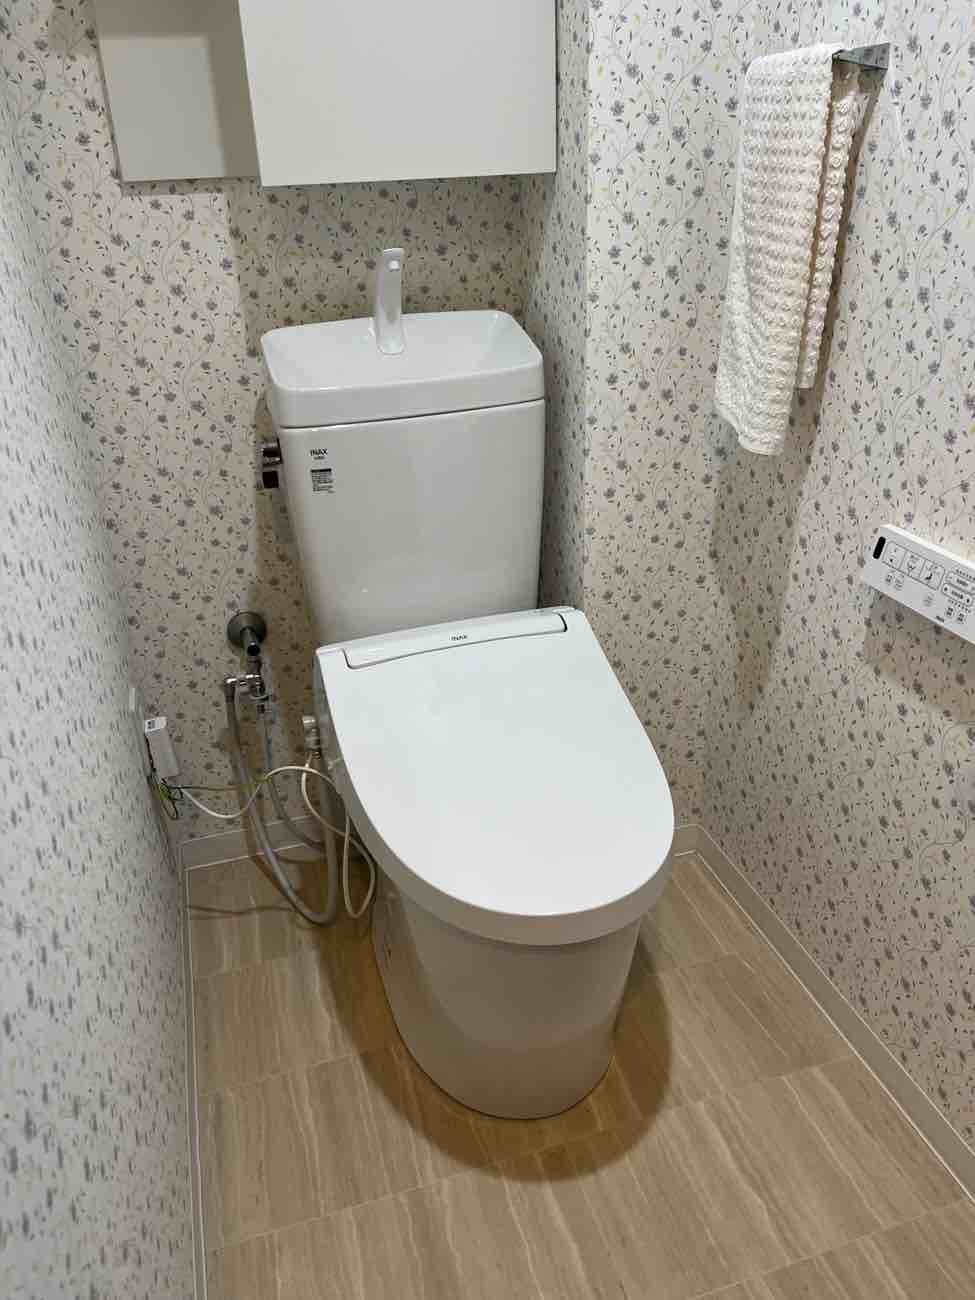 【埼玉県三郷市】O様邸トイレ交換工事が完了しました。LIXIL アメージュ便器 画像